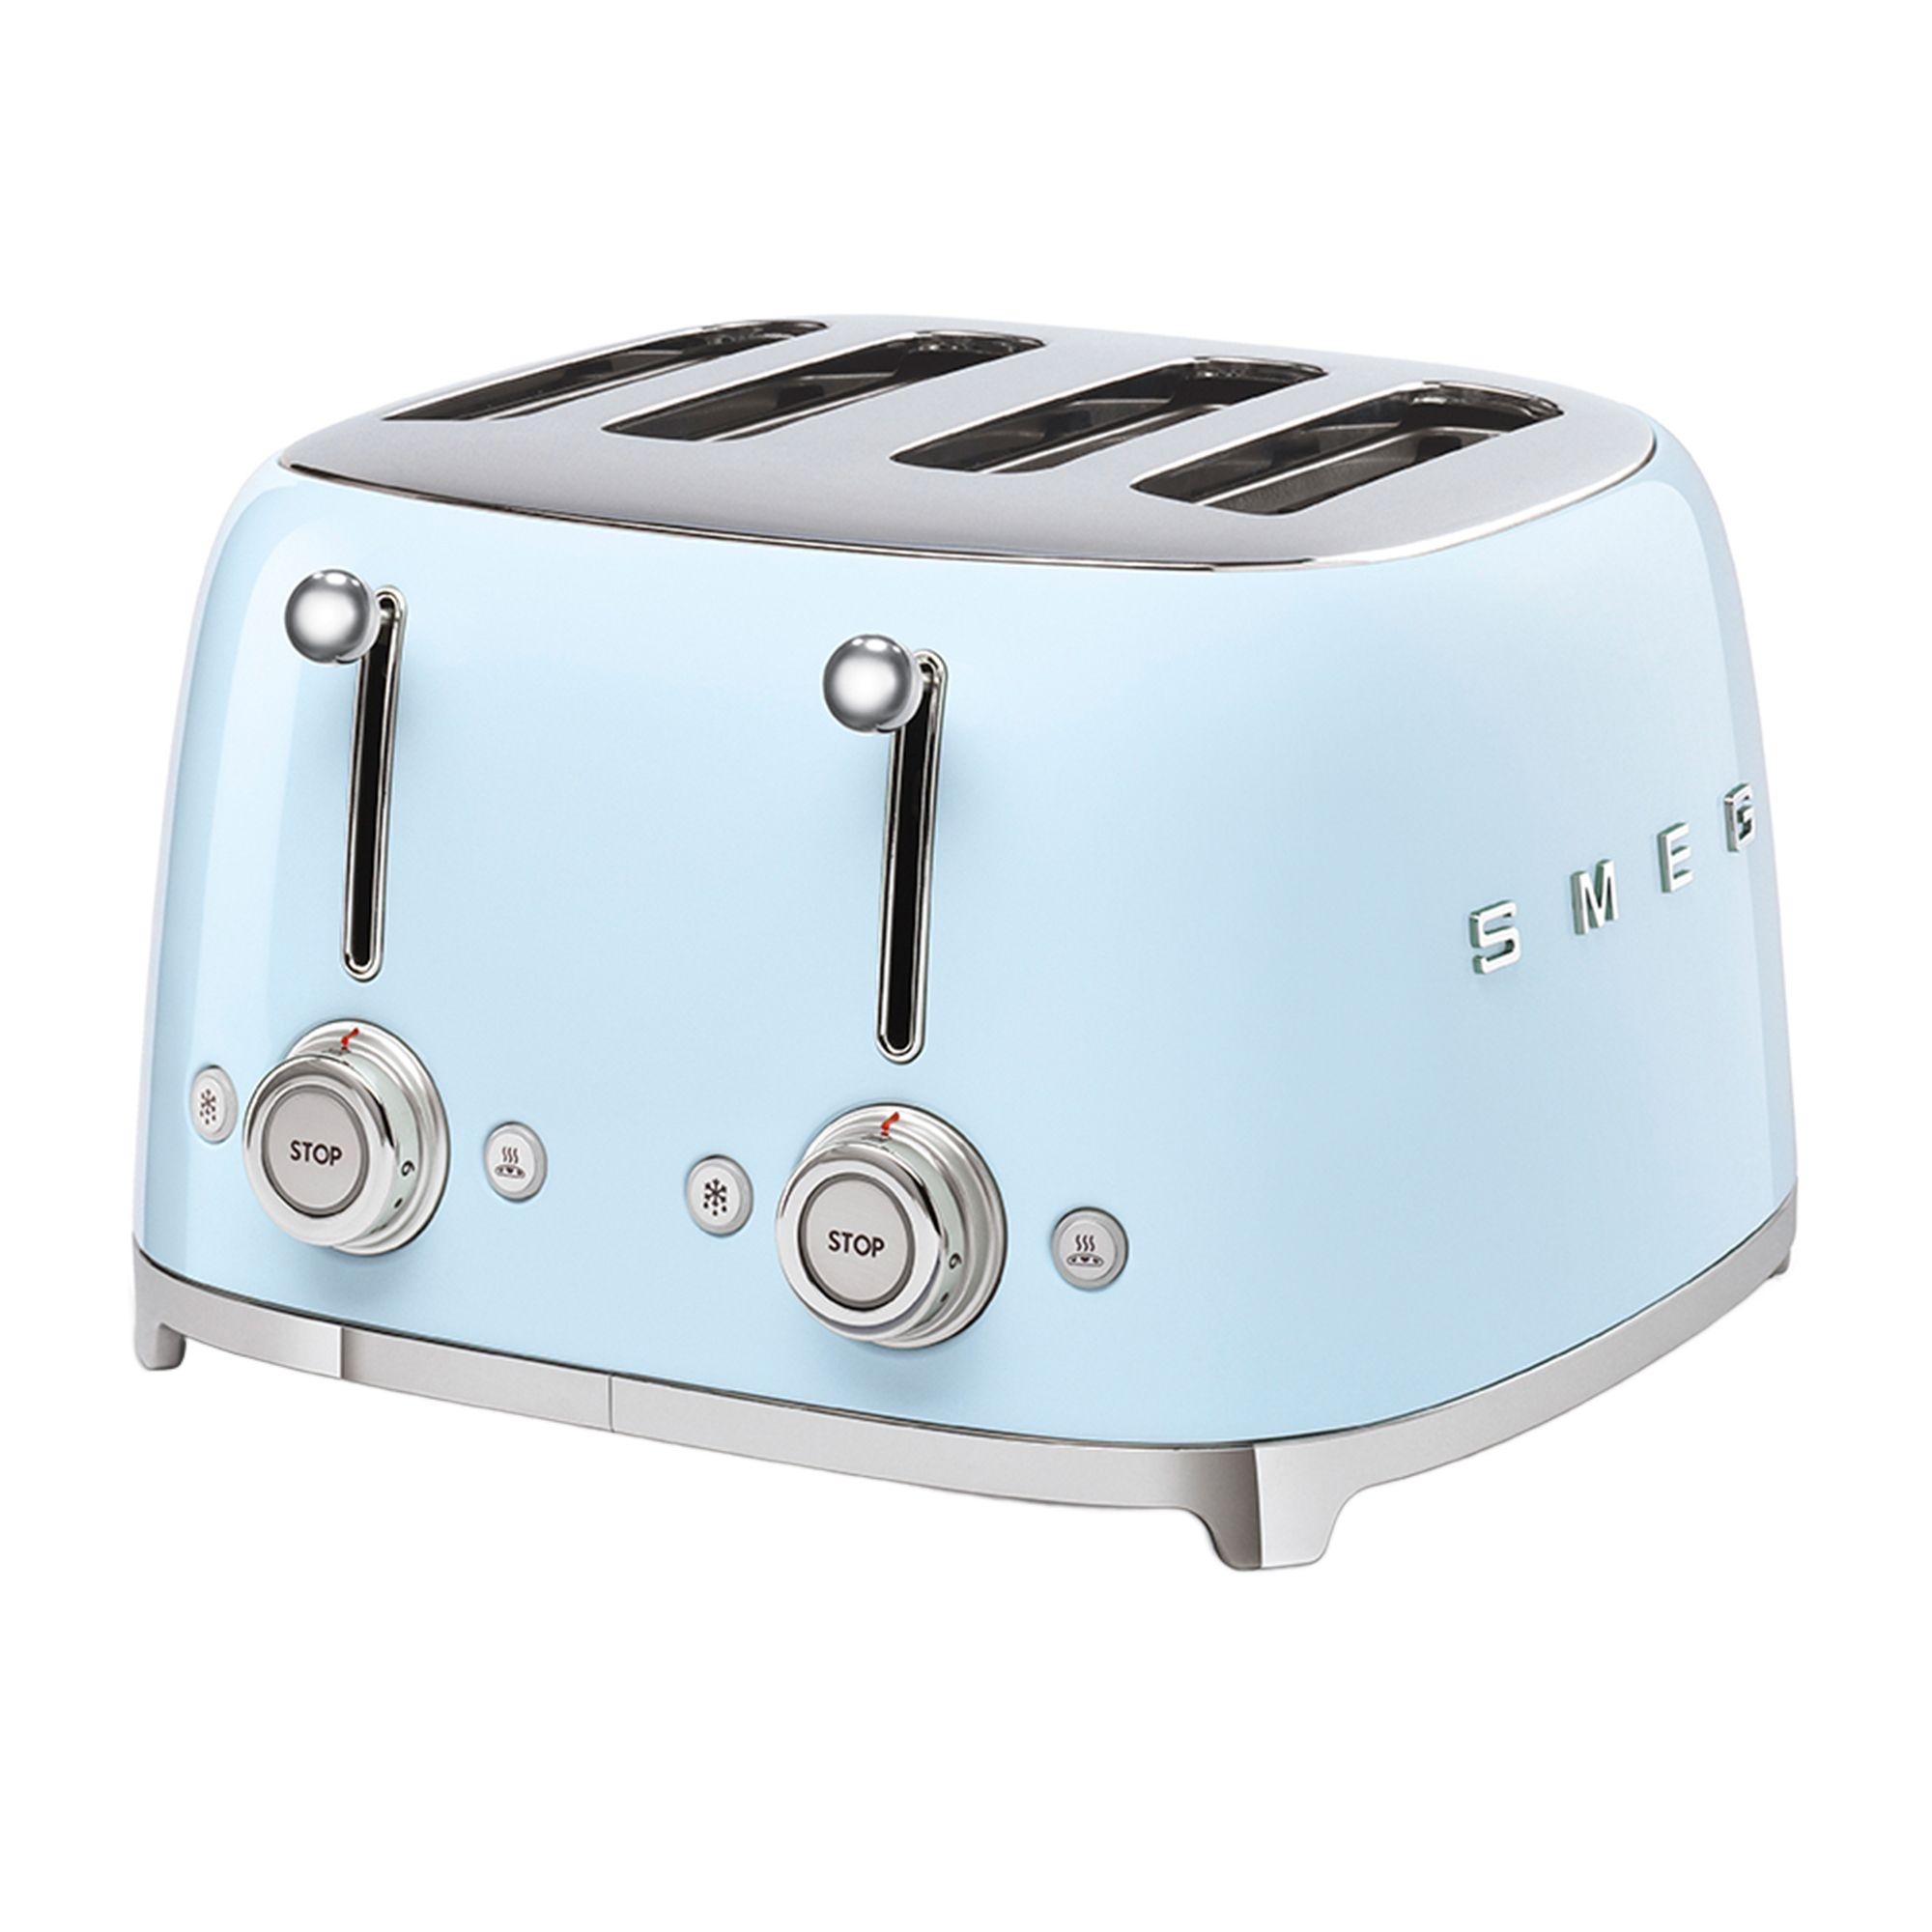 Smeg 50's Retro Style 4 Slot Toaster Pastel Blue Image 1